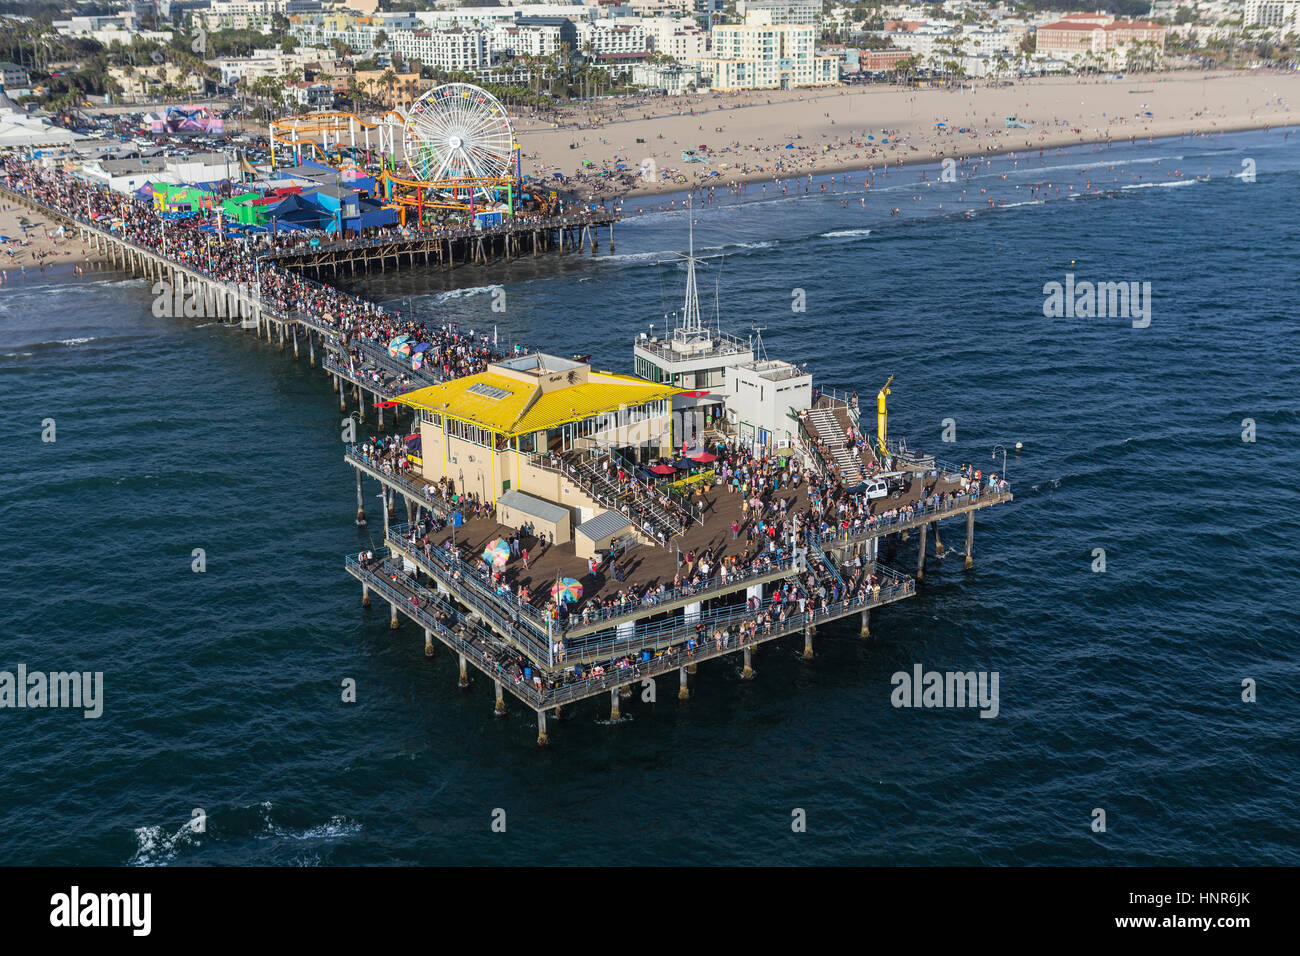 Santa Monica, Californie, USA - 6 août 2016 : week-end d'été des foules populaires sur la jetée de Santa Monica, près de Los Angeles. Banque D'Images